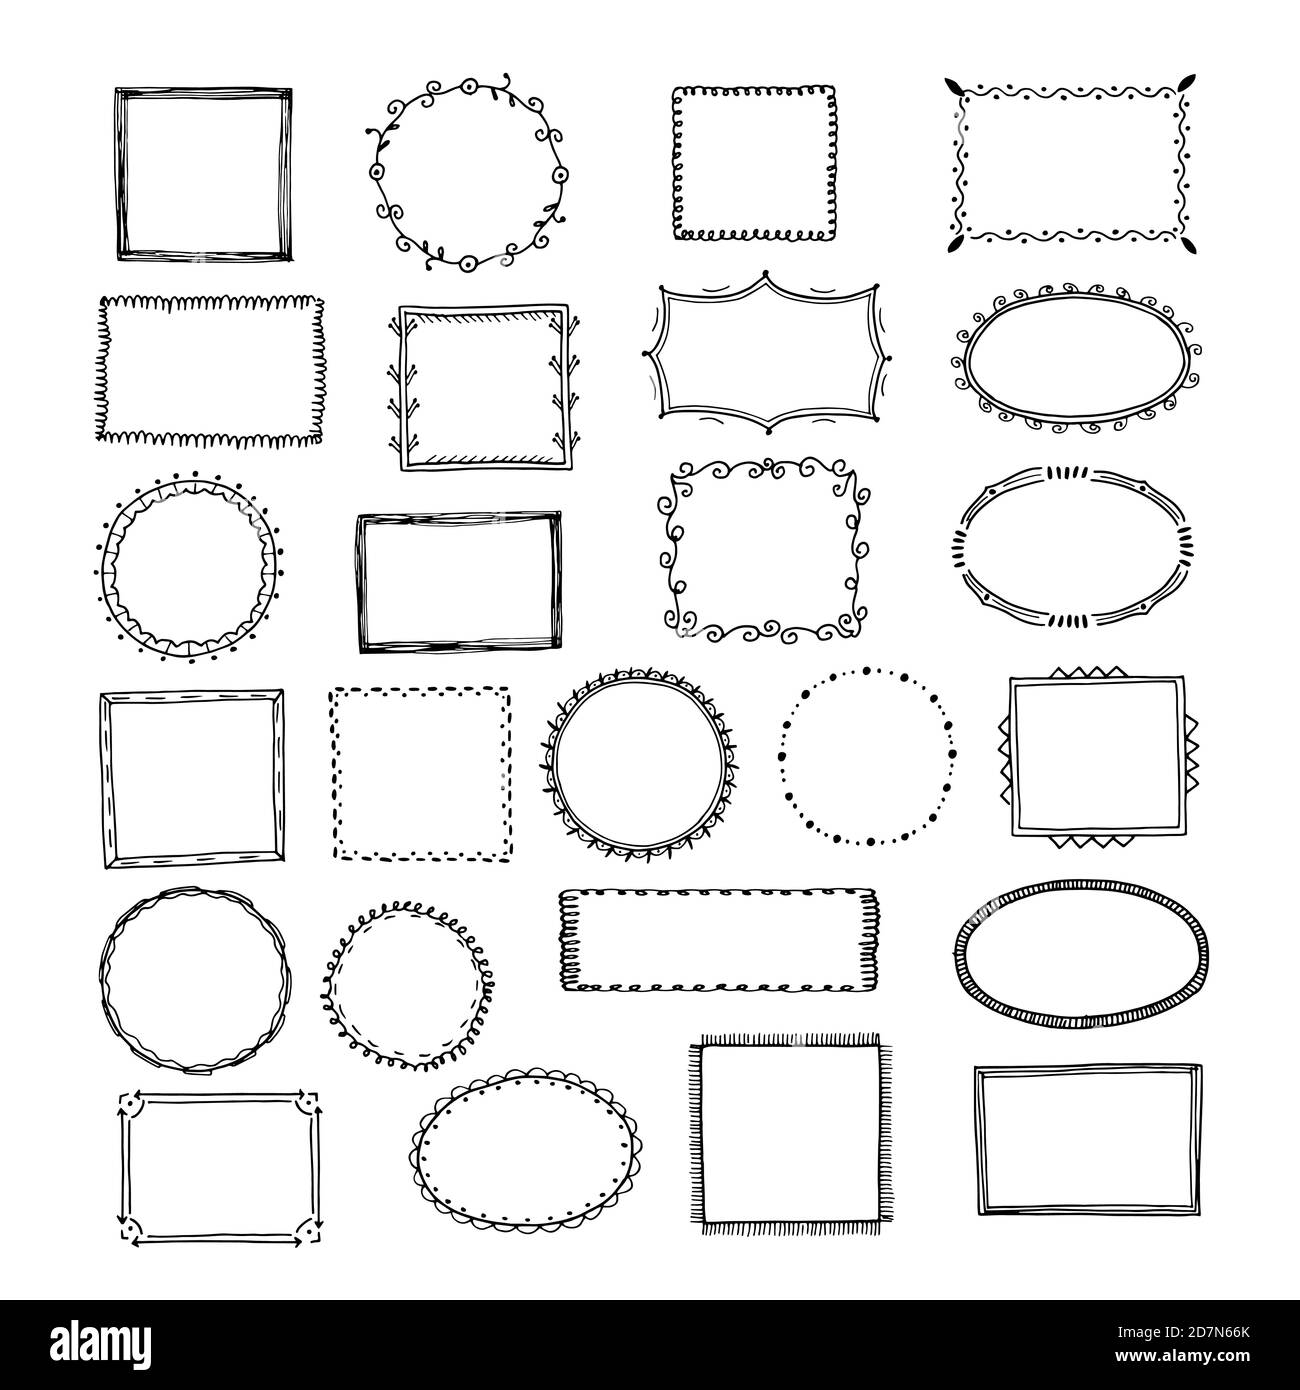 Doodle-Rahmen. Quadratische Rahmen Skizzenlinien handgezeichnete runde Bild leeren Rahmen vintage Vektor-Set. Abbildung des Rahmenzeichnung Bild, skizzierte Rechteck-Box Stock Vektor